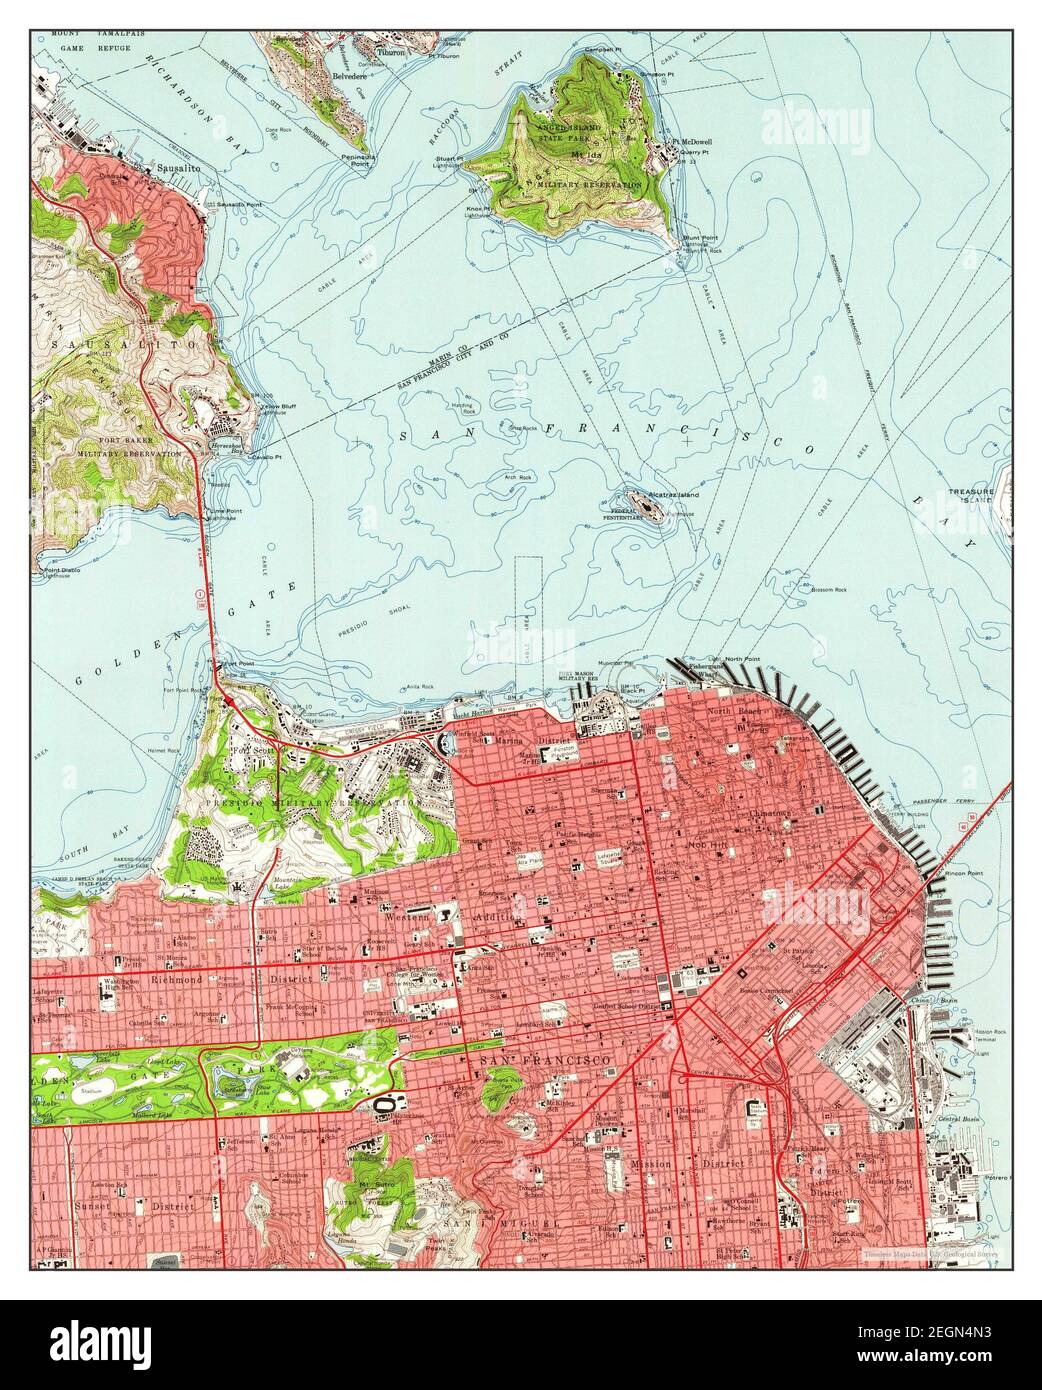 San Francisco North, California, Karte 1956, 1:24000, Vereinigte Staaten von Amerika von Timeless Maps, Daten U.S. Geological Survey Stockfoto